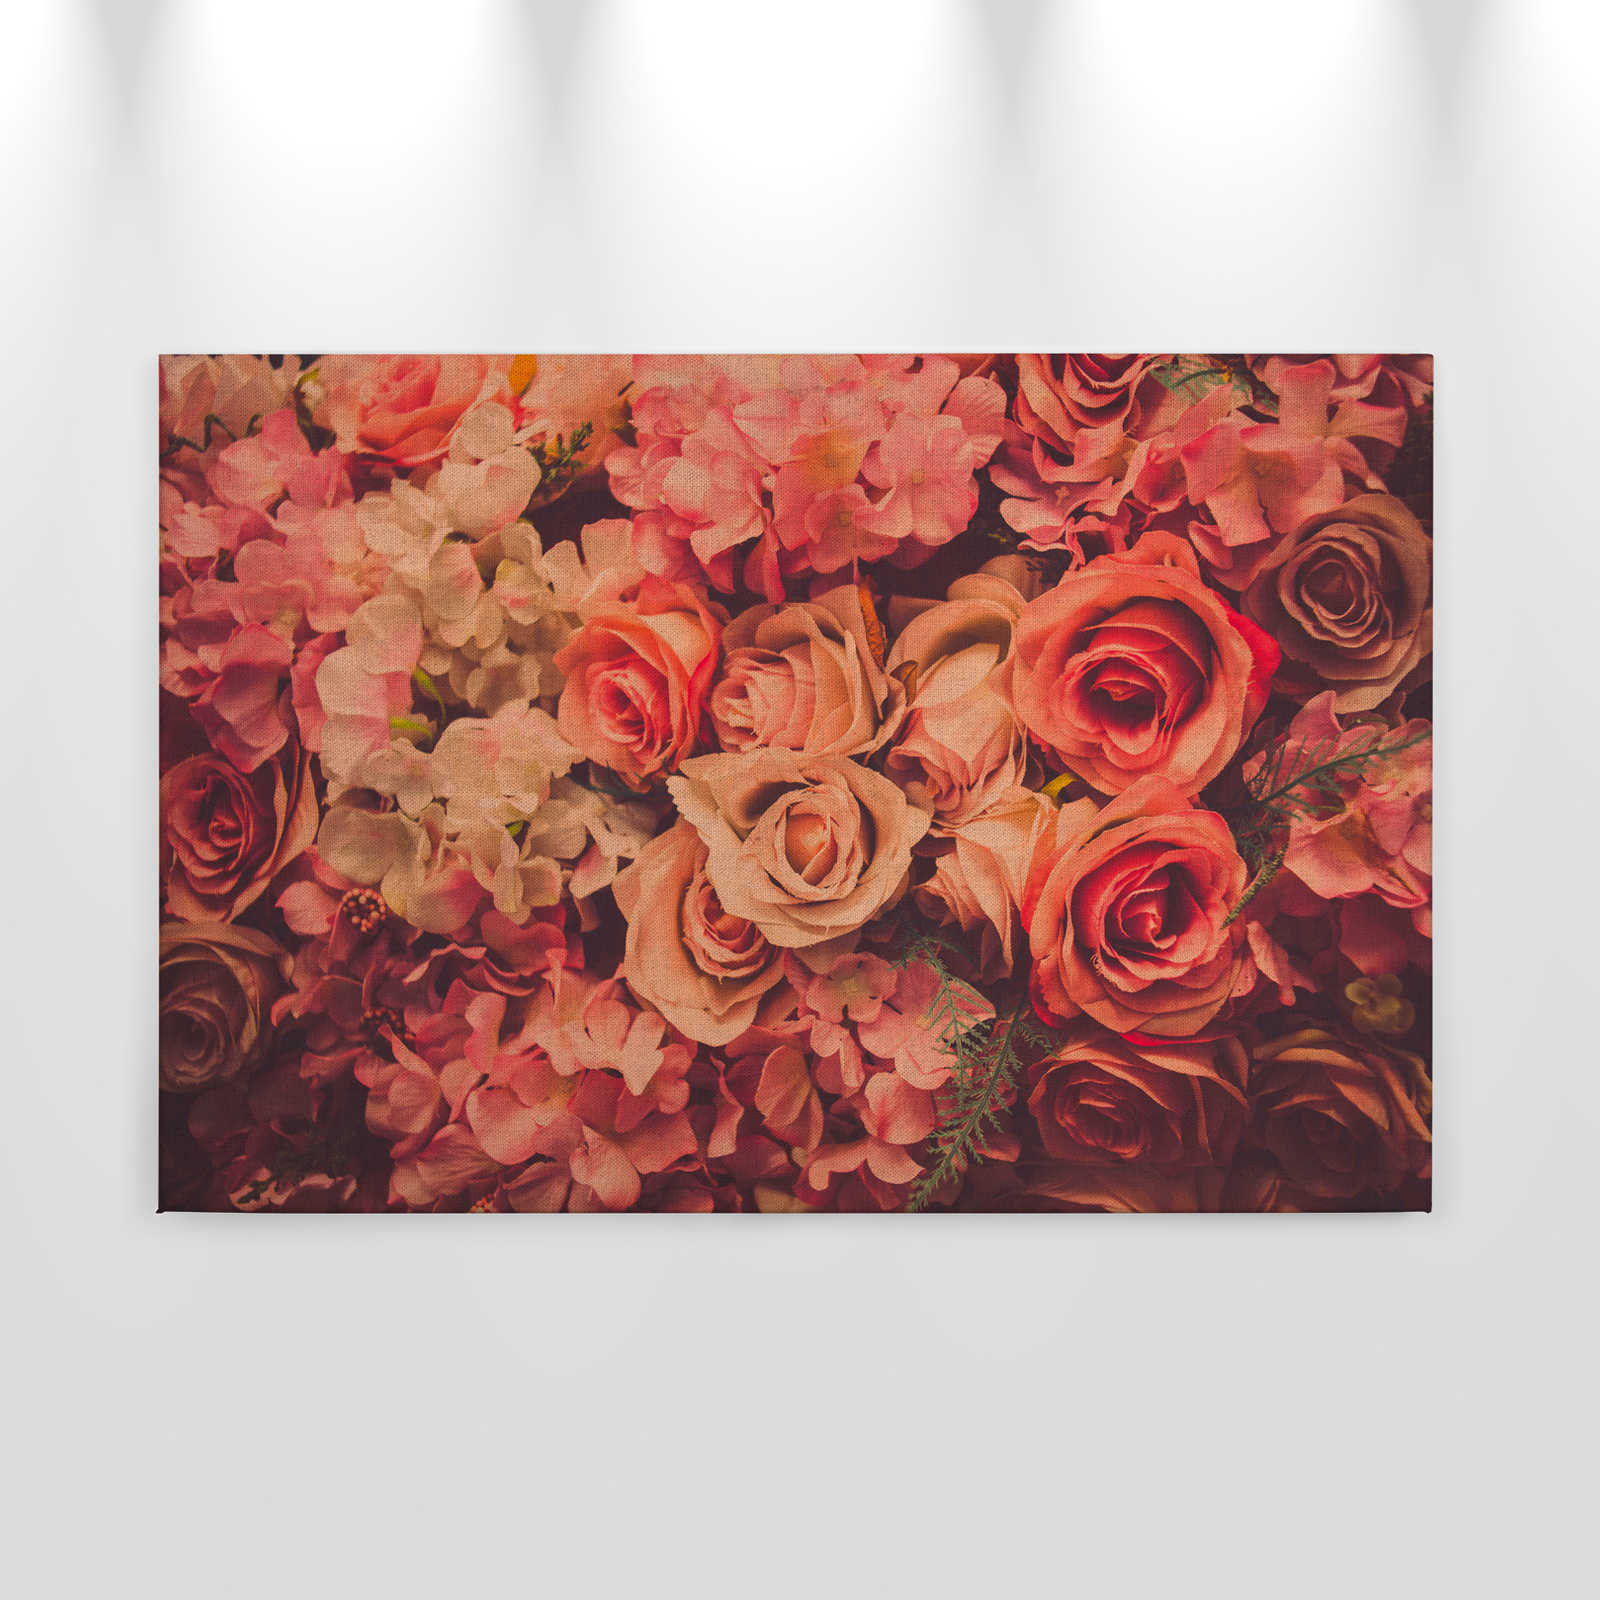             Toile avec motif de roses romantiques aspect lin - 0,90 m x 0,60 m
        